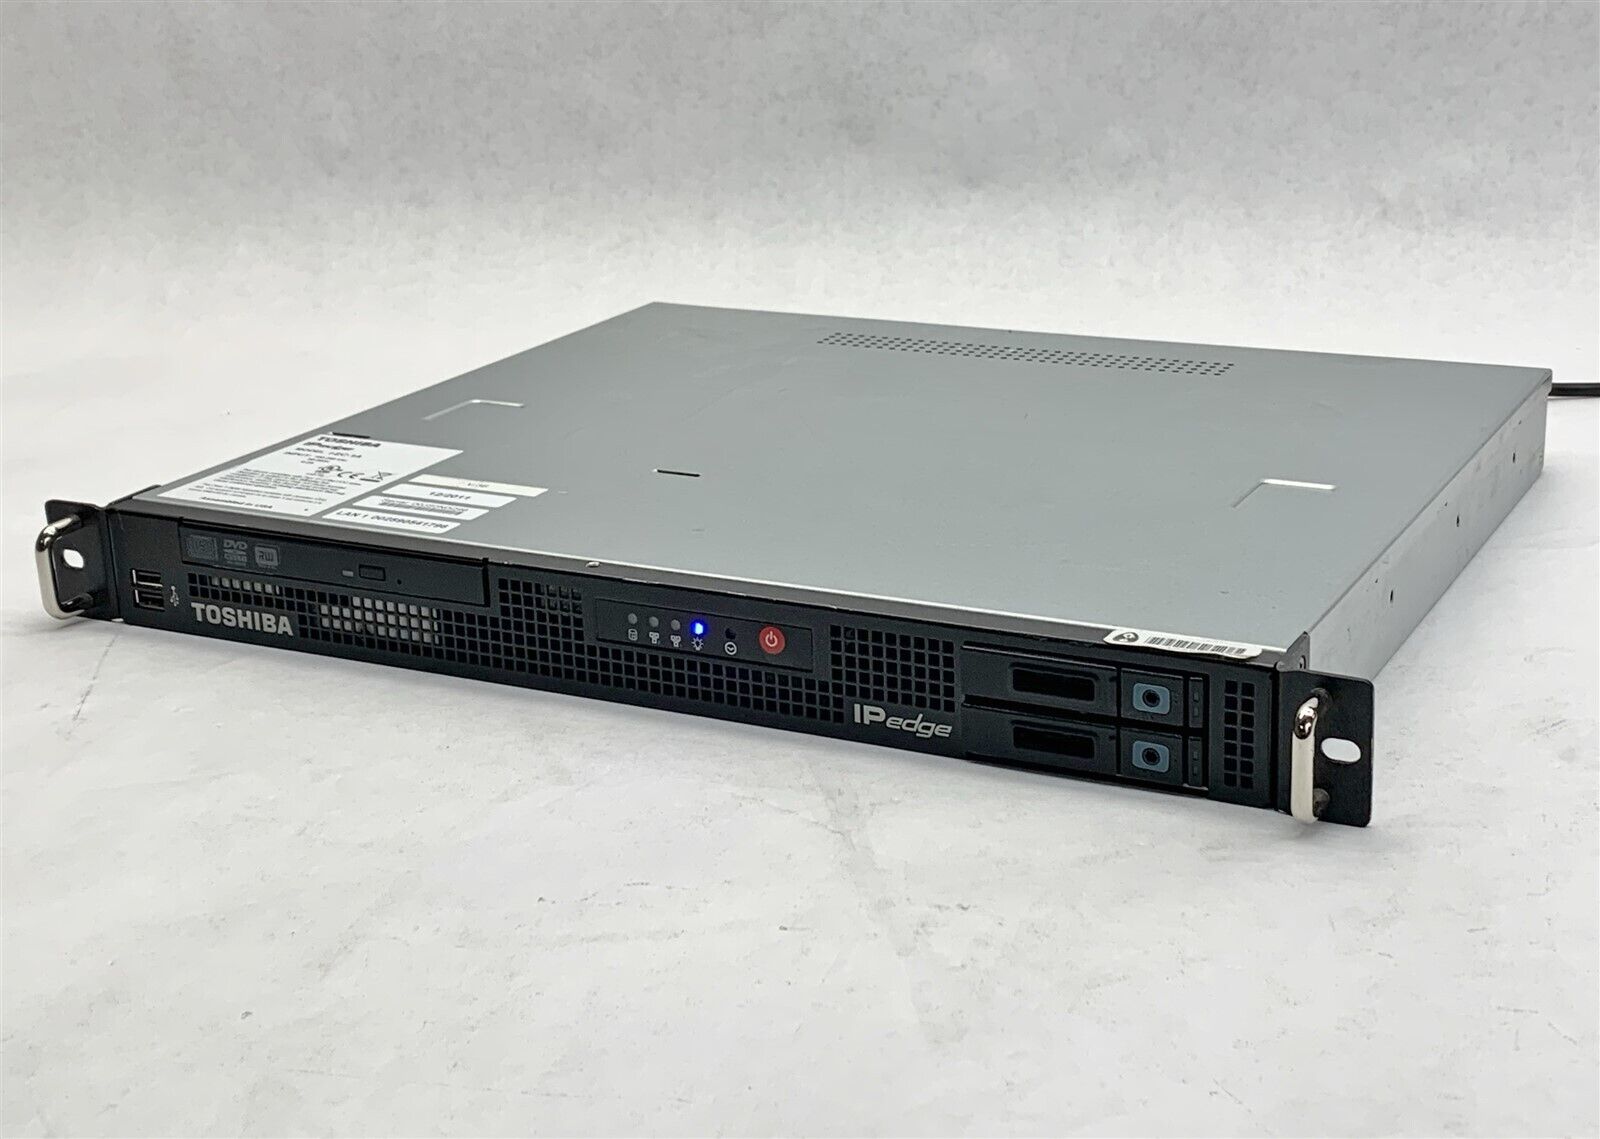 Toshiba IP Edge Model I-EC-1A Rack Server X7SBi Q9400 2.66GHz CPU 4GB RAM No HDD